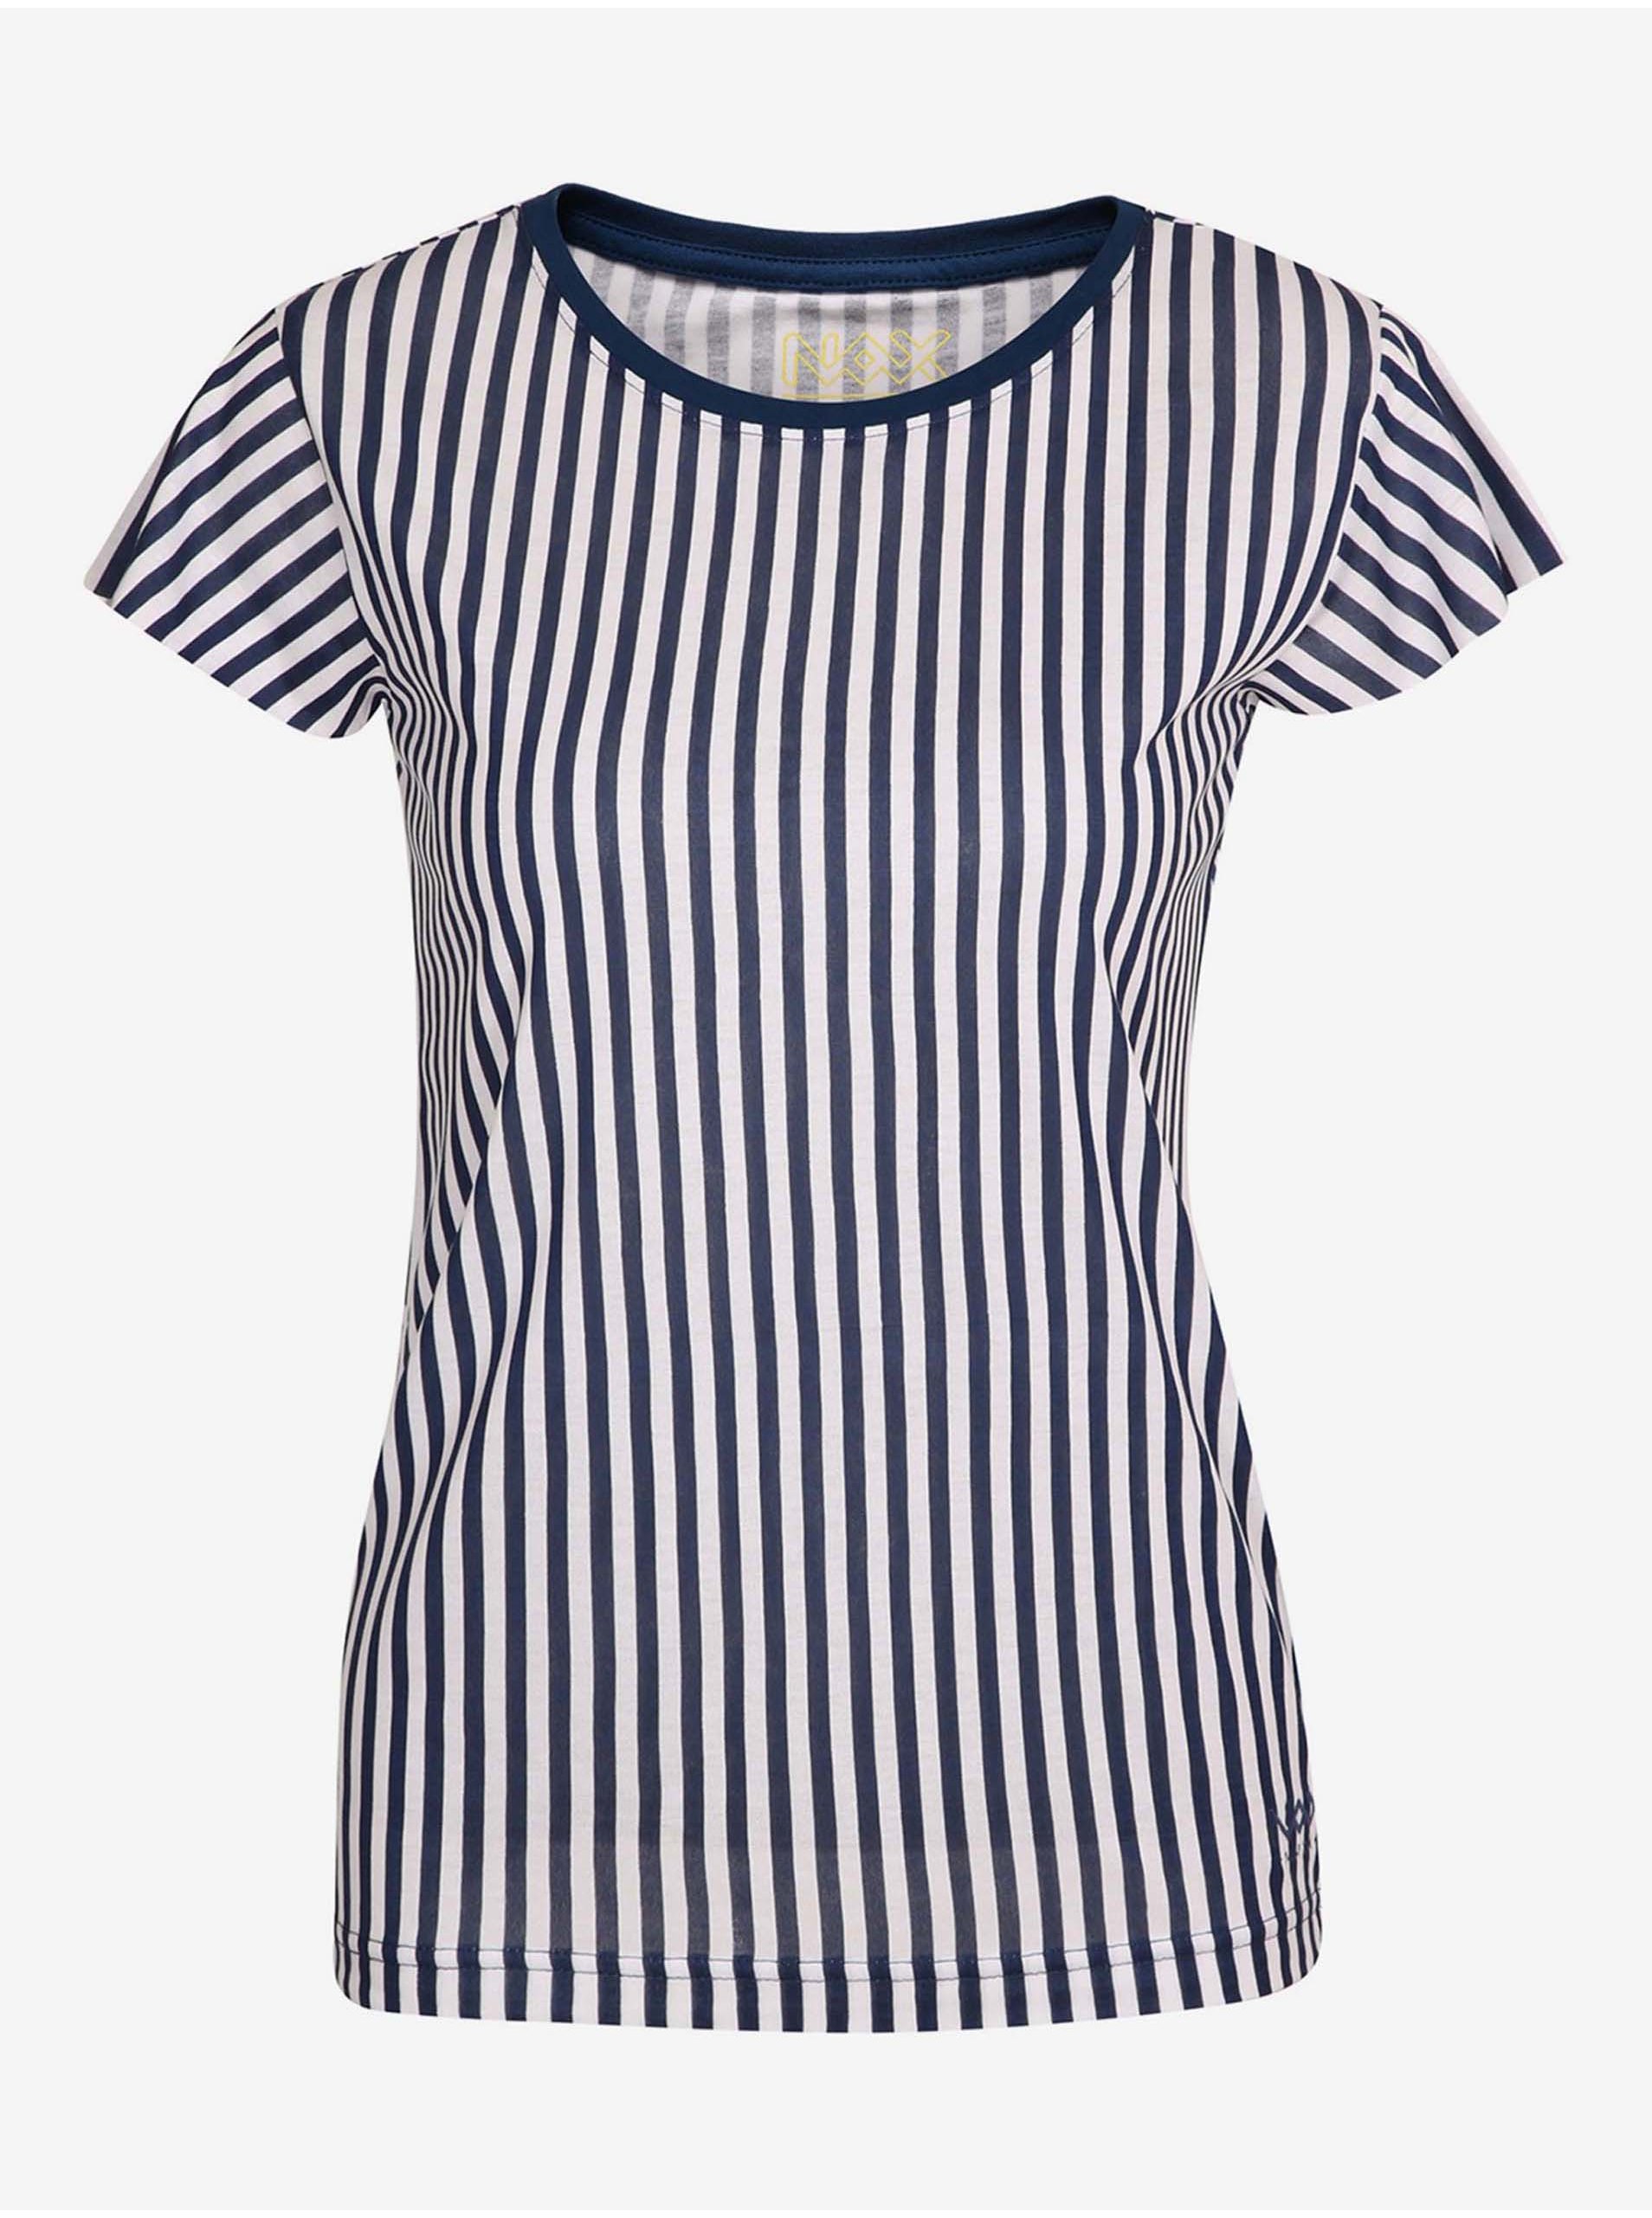 E-shop Bielo-modré dámske pruhované tričko NAX HUDERA